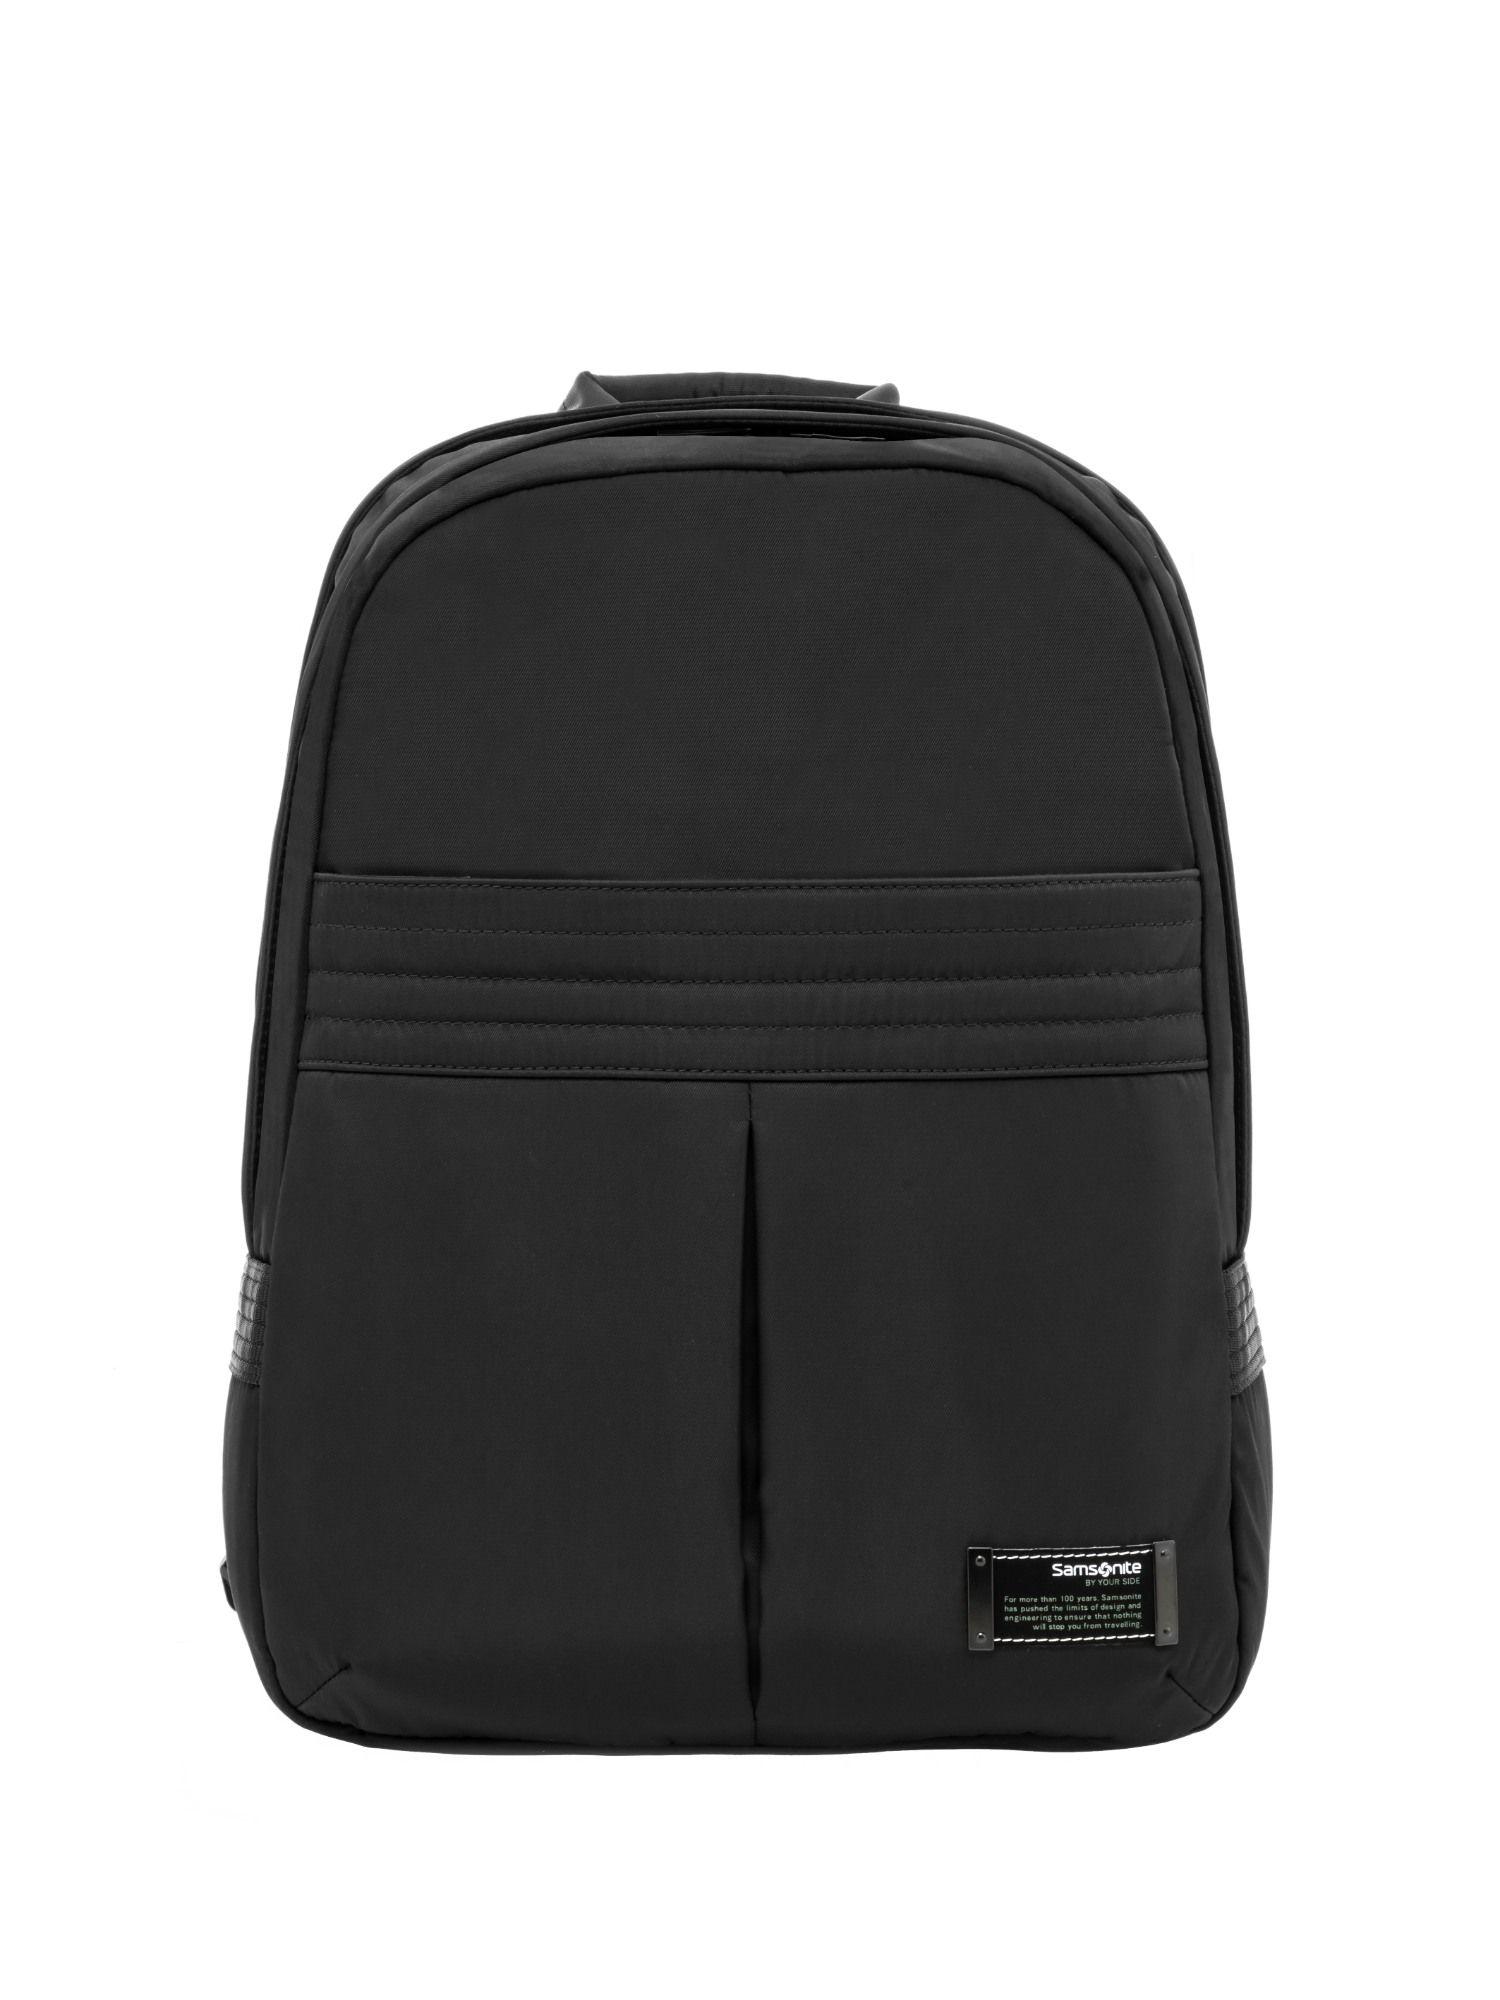 marvas laptop backpack -in-black